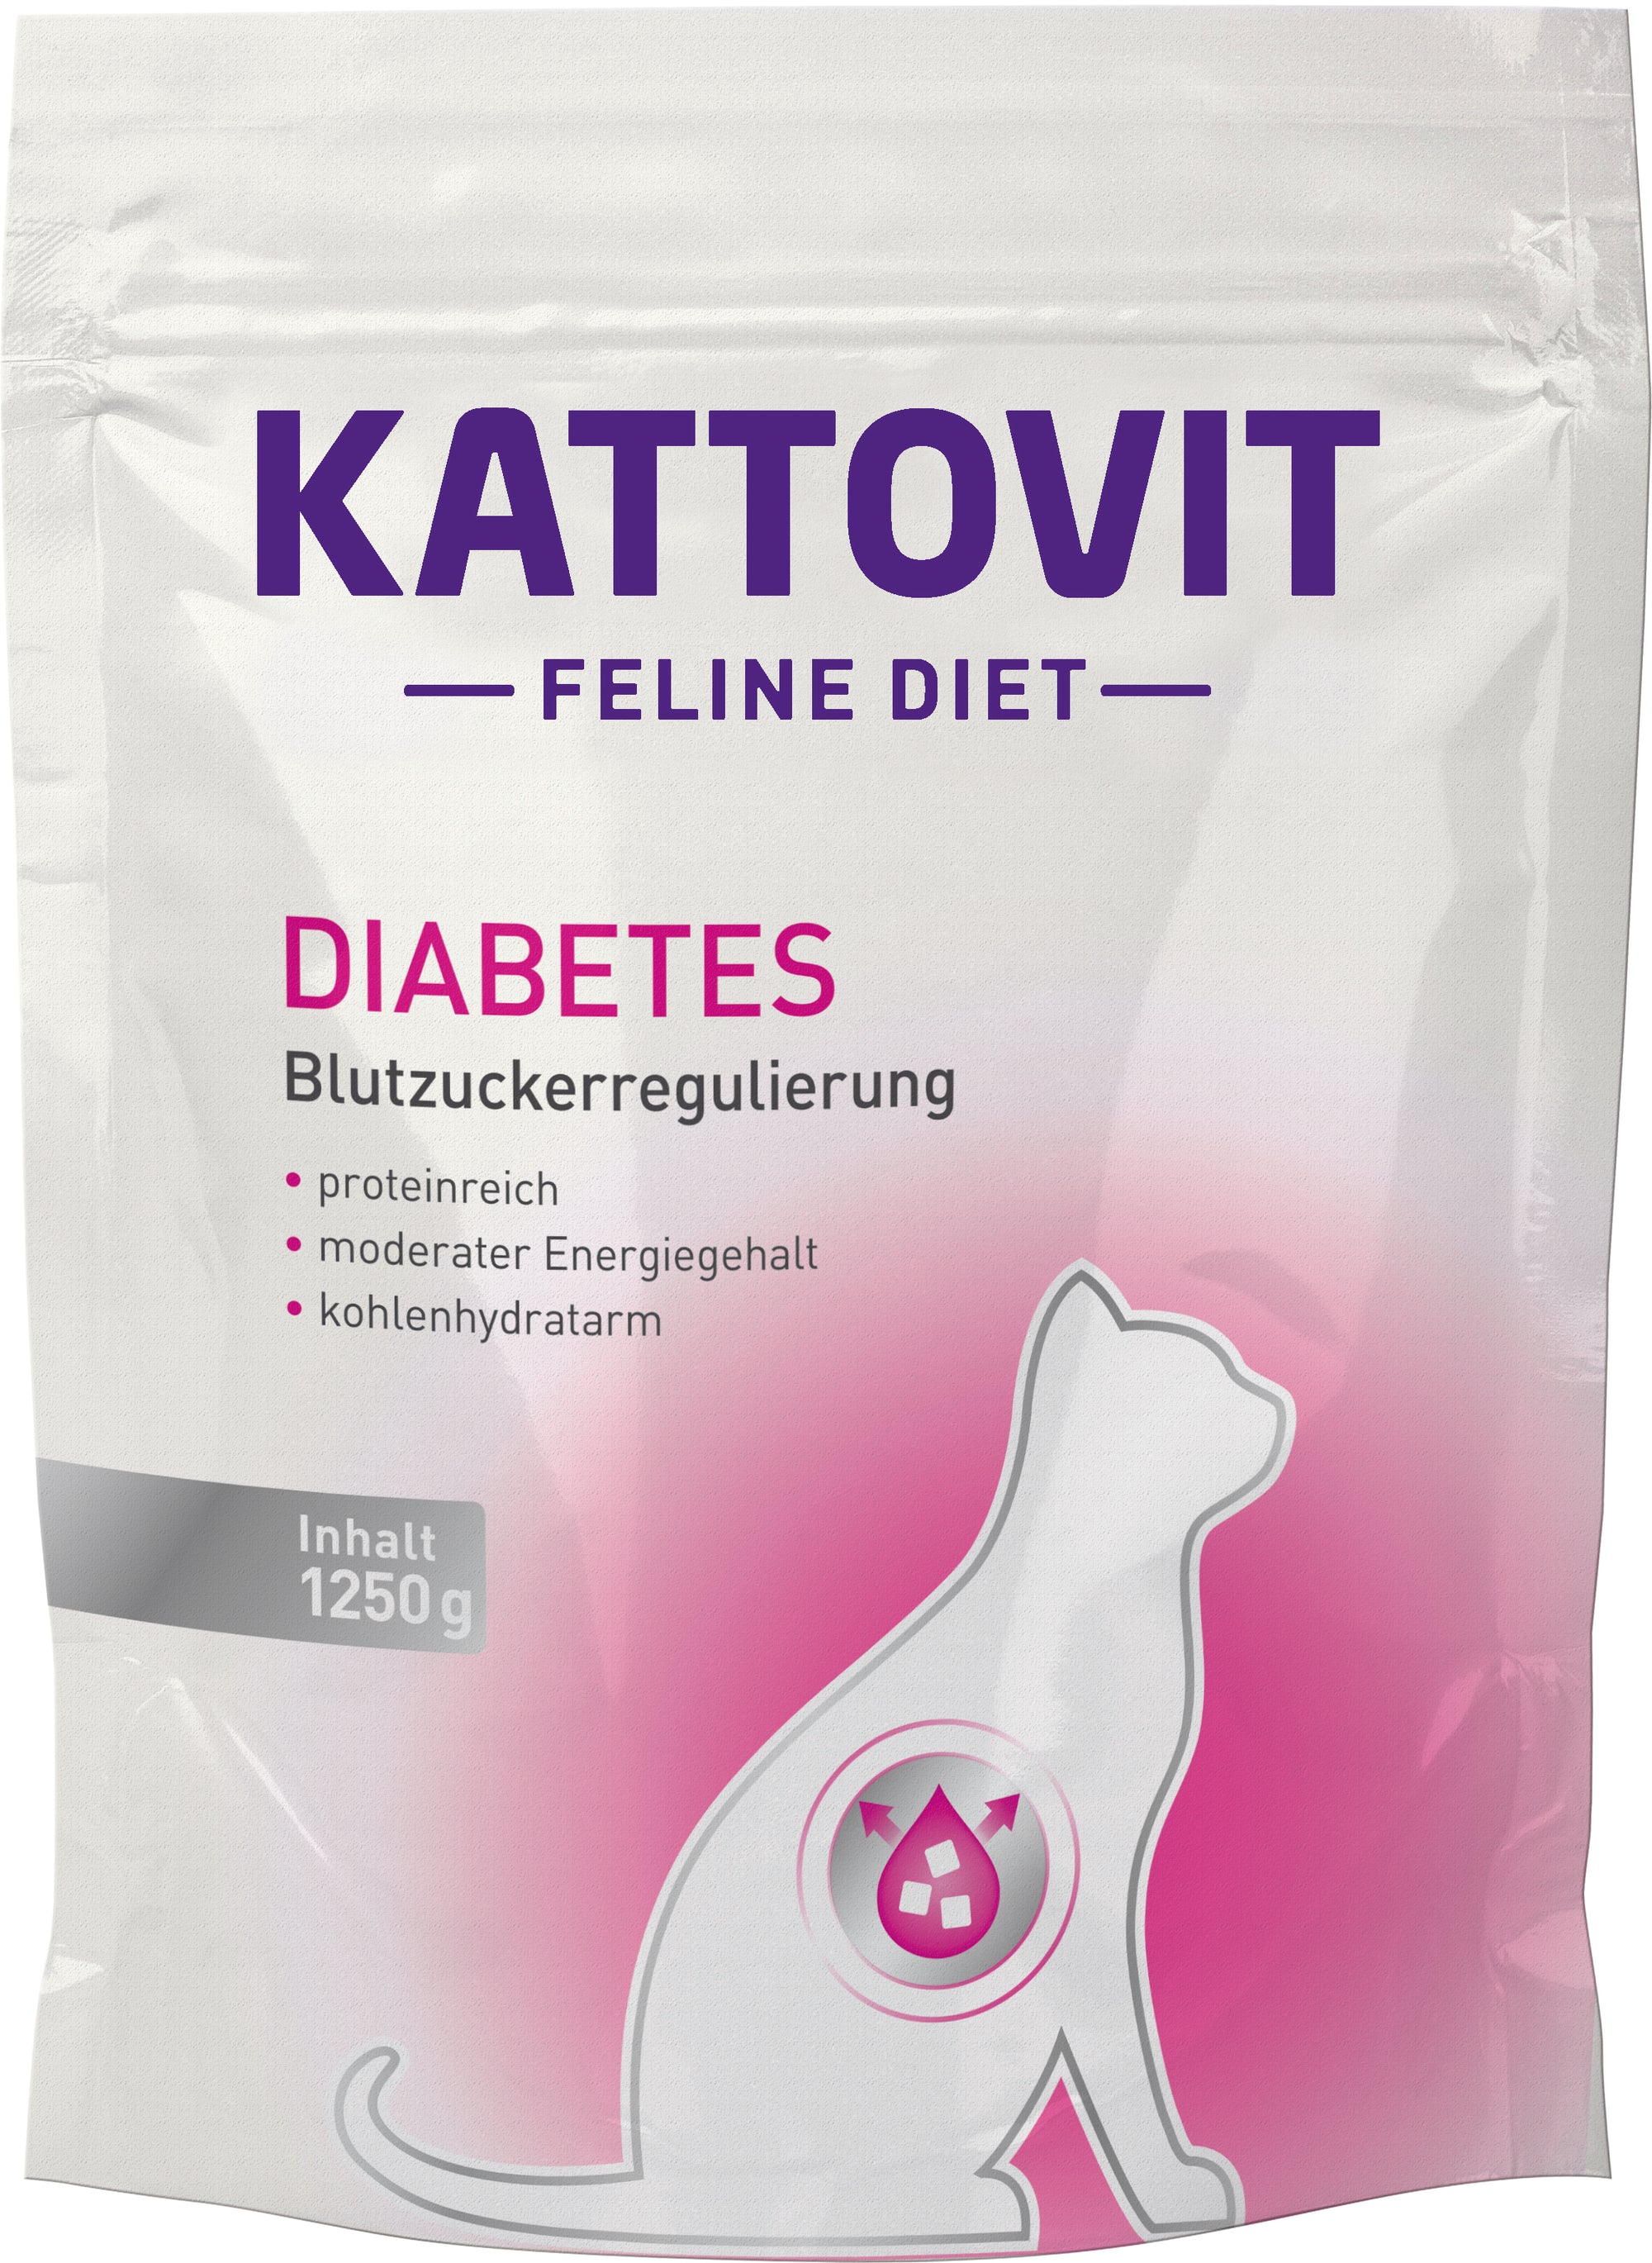 Kattovit Feline Diet Diabetes Trockenfutter - zoo.de